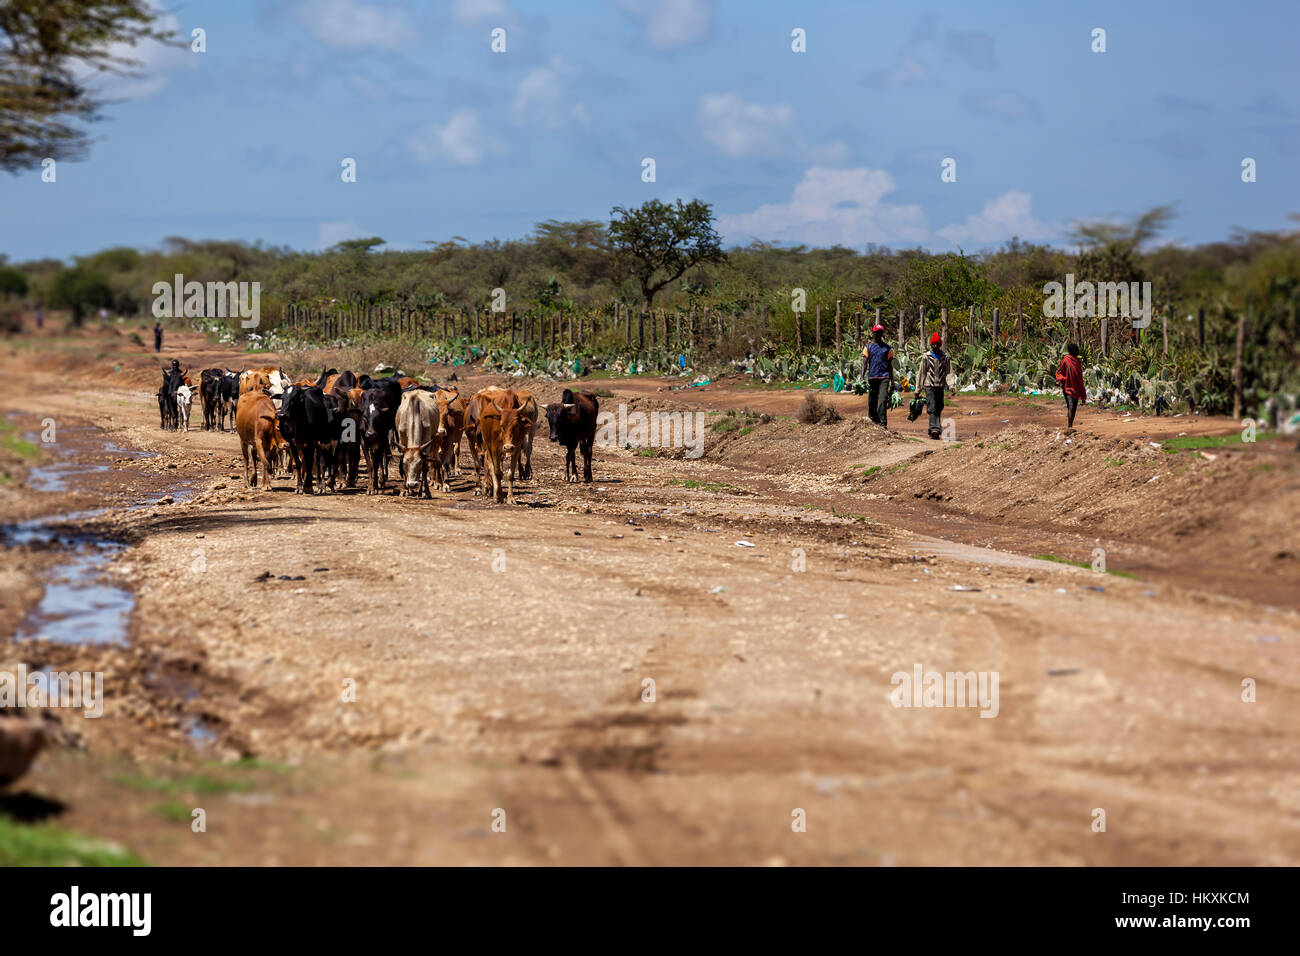 Le Masai Mara, Kenya - 02 janvier : Inconnu enfant africain au Kenya, le peuple noir, les enfants pauvres Banque D'Images